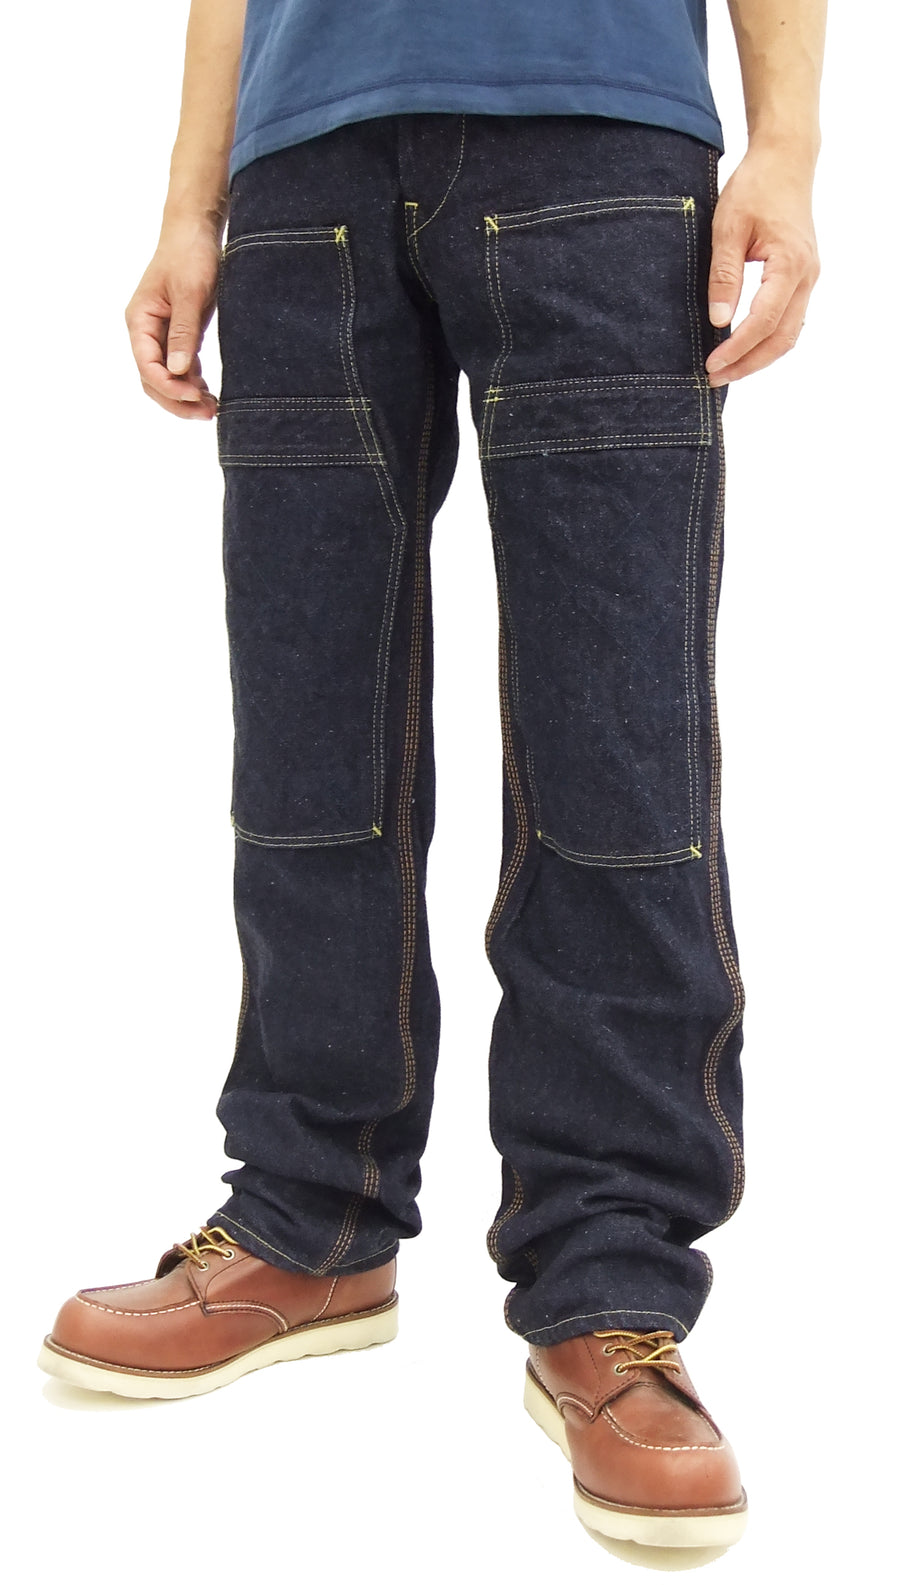 Men's Uniform Work Jeans | Carhartt Company Gear